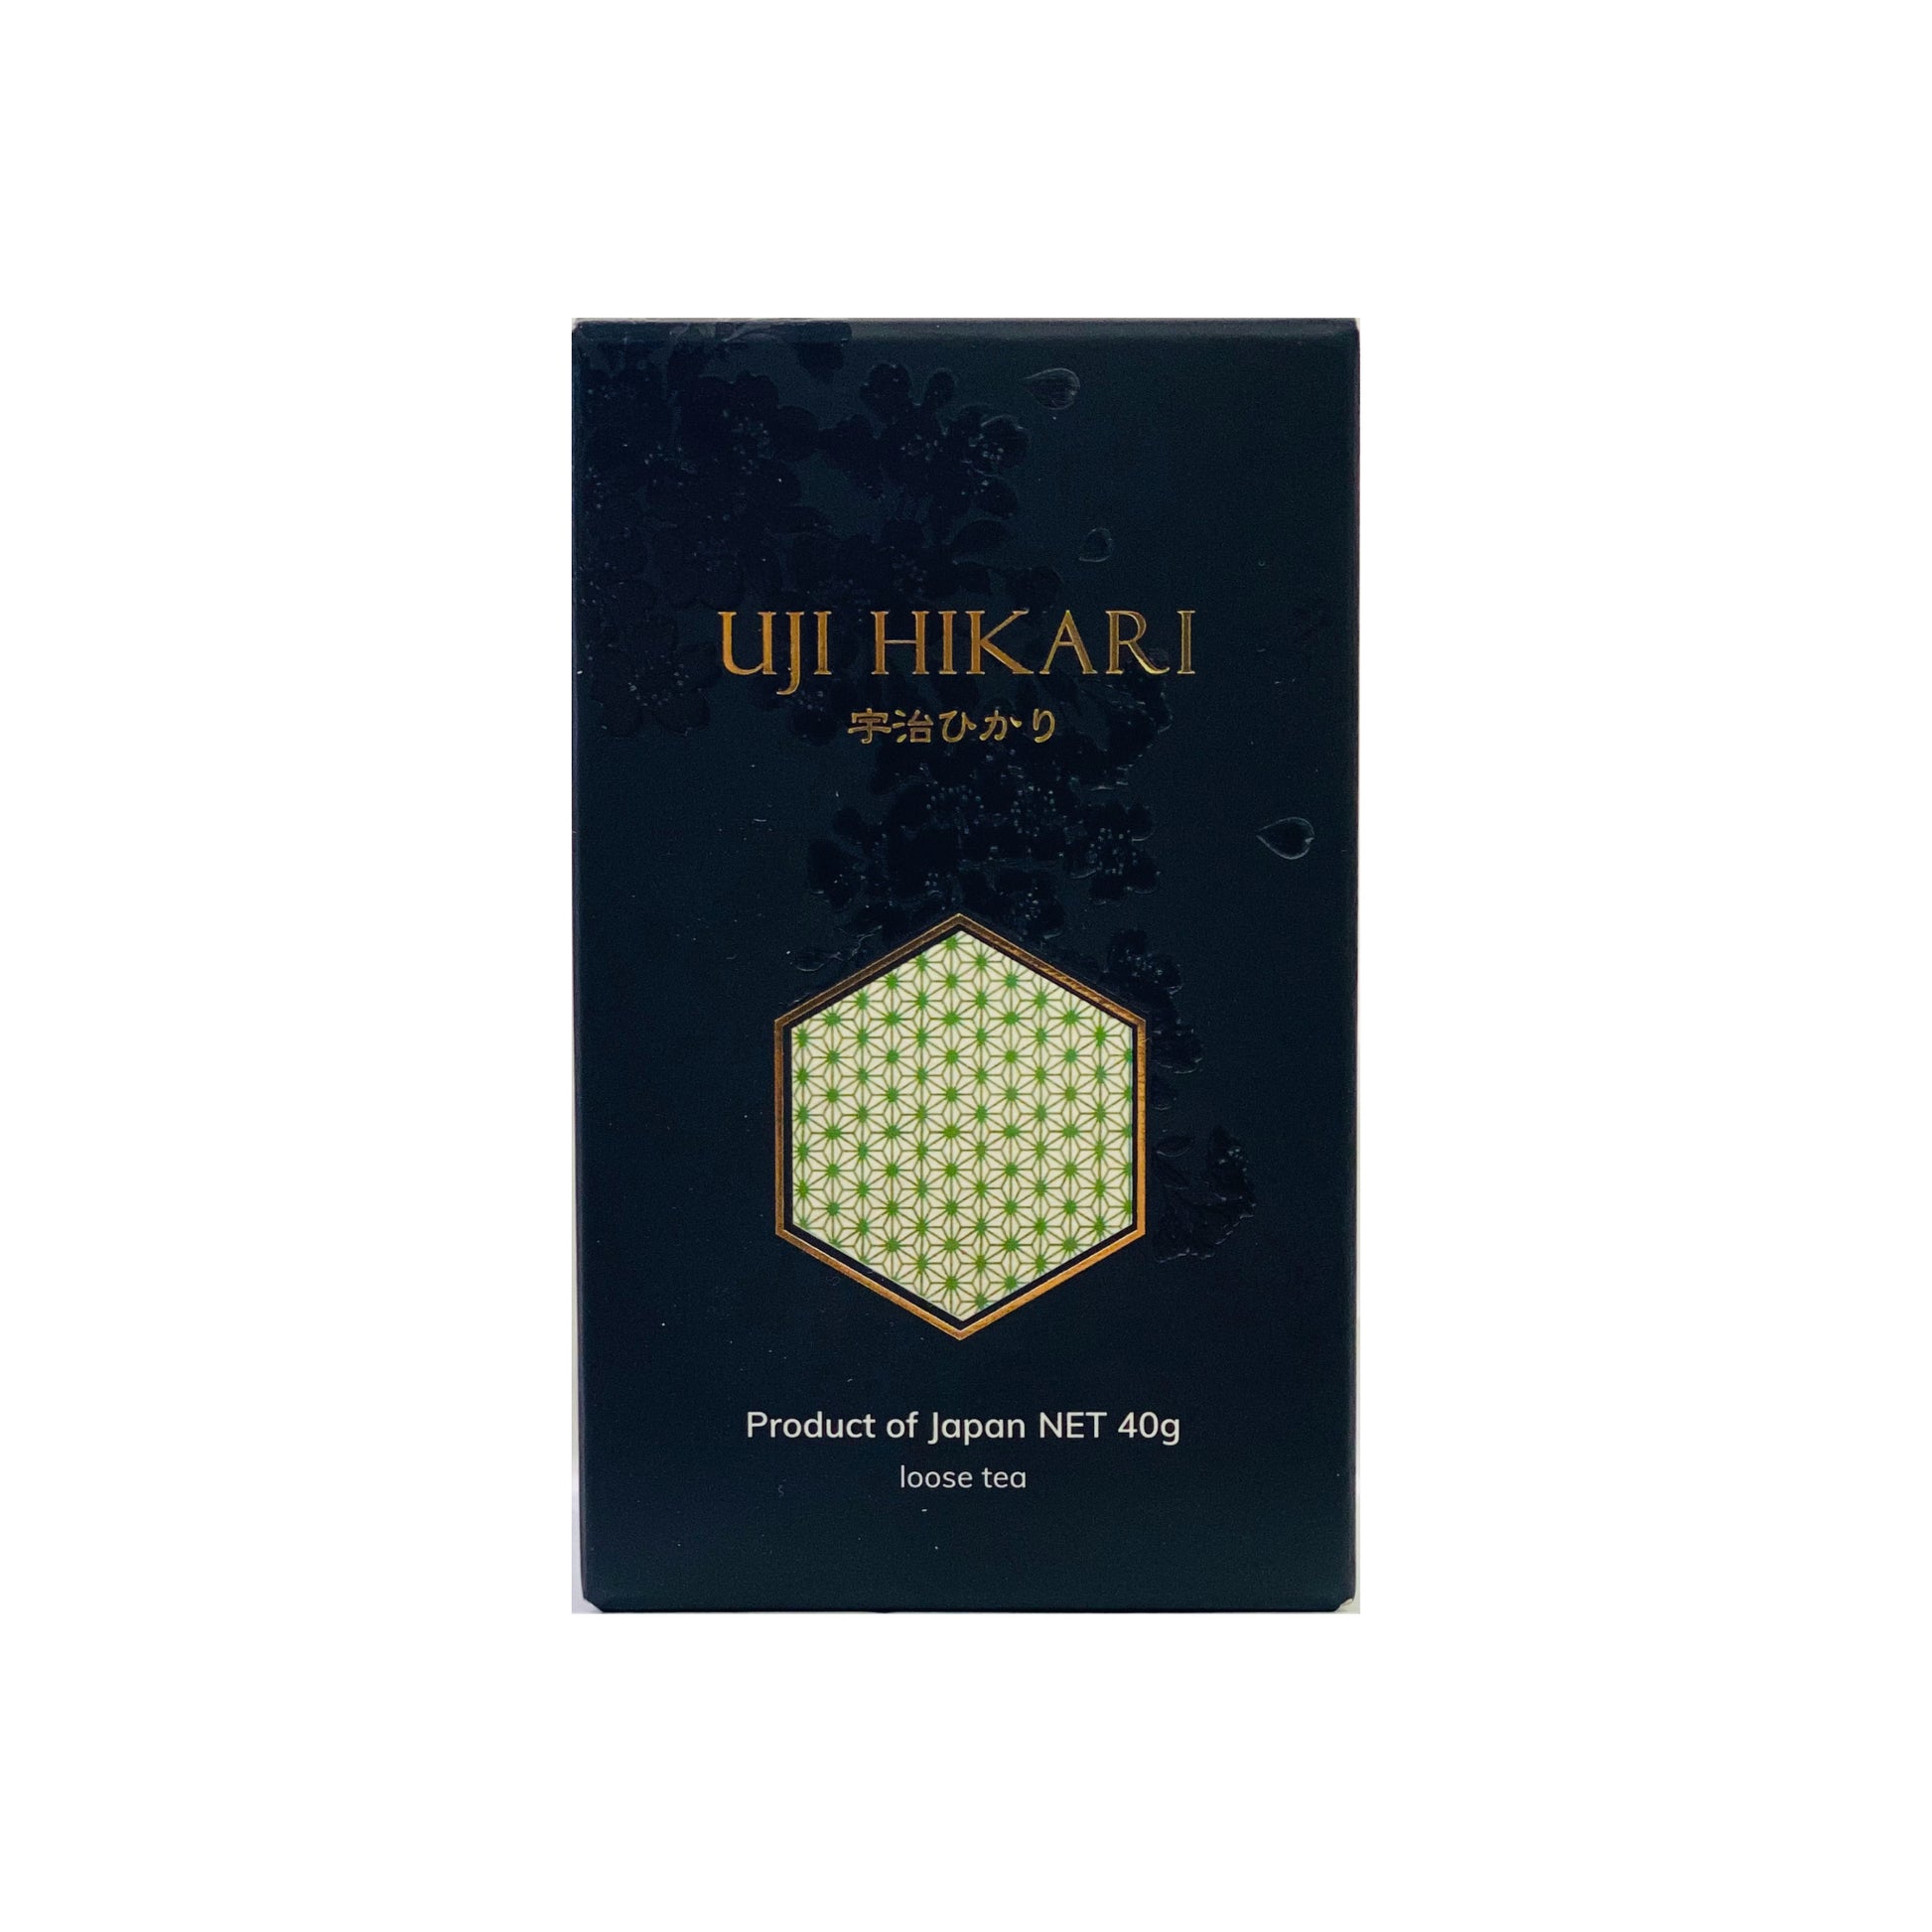 Uji Hikari loose tea（40g）